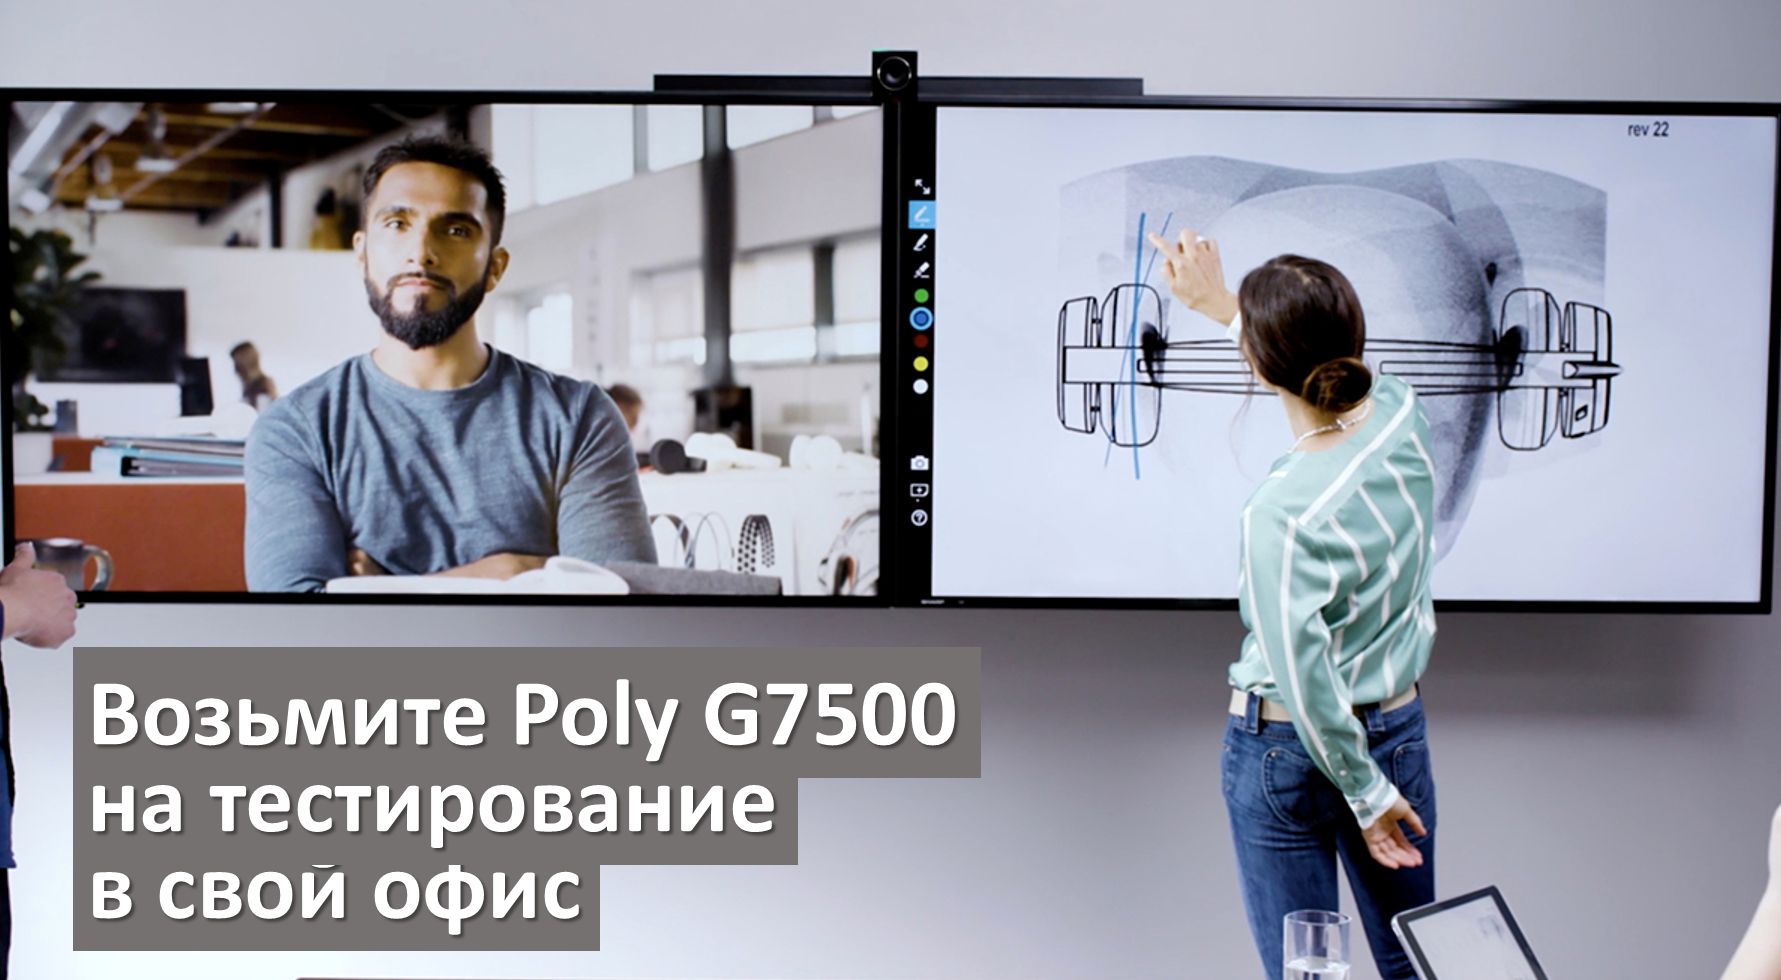 Решения для видеоконференций на базе новейшего кодека Poly G7500